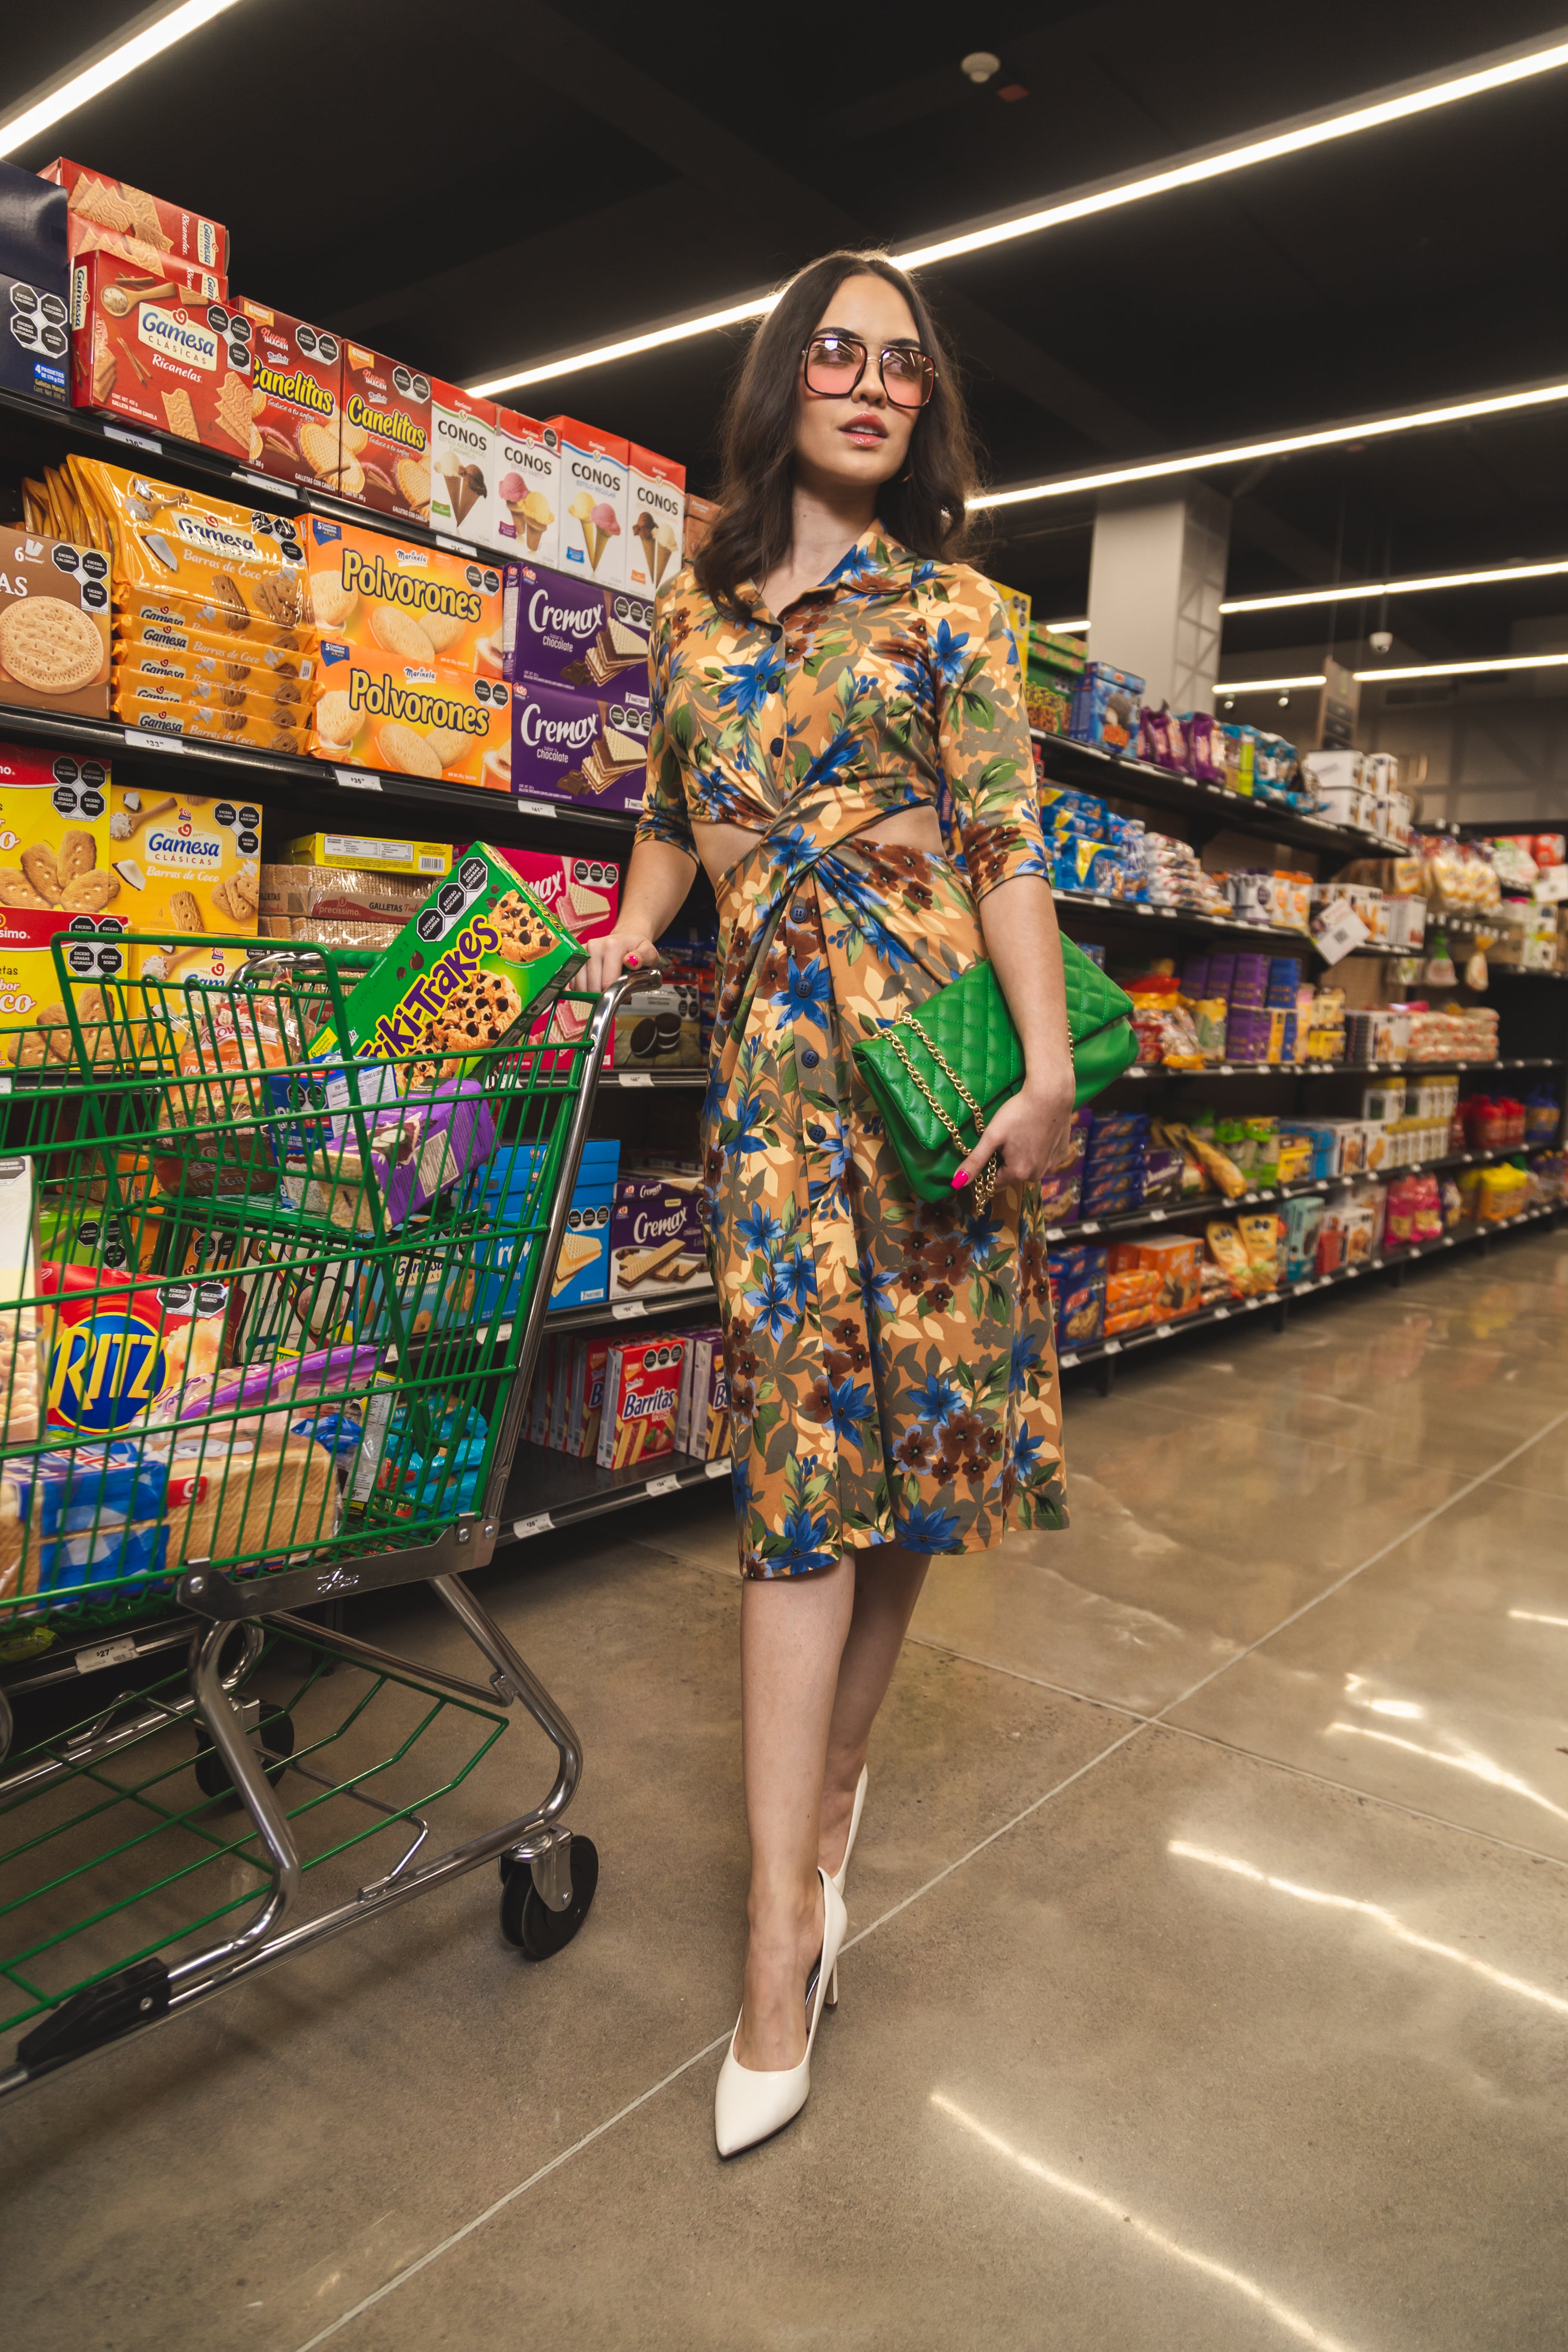 Una mujer sujetando un carrito de la compra. | Fuente: Pexels